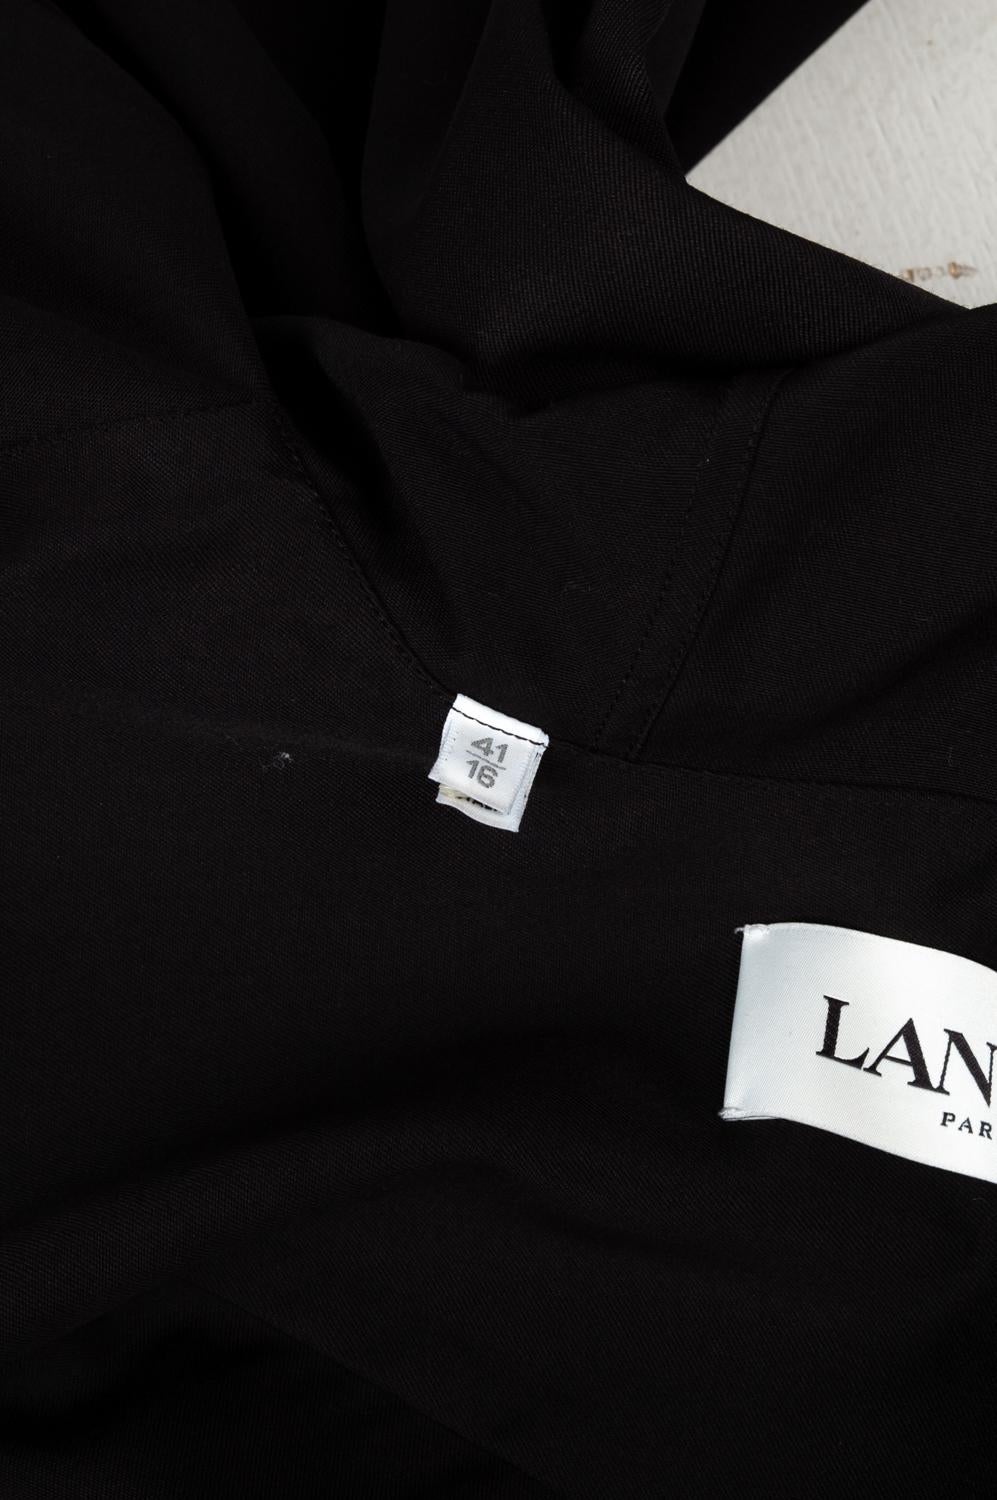 Men's Lanvin Hooded Shirt Men Light Jacket Size 41/16 (Large), S551-1 For Sale